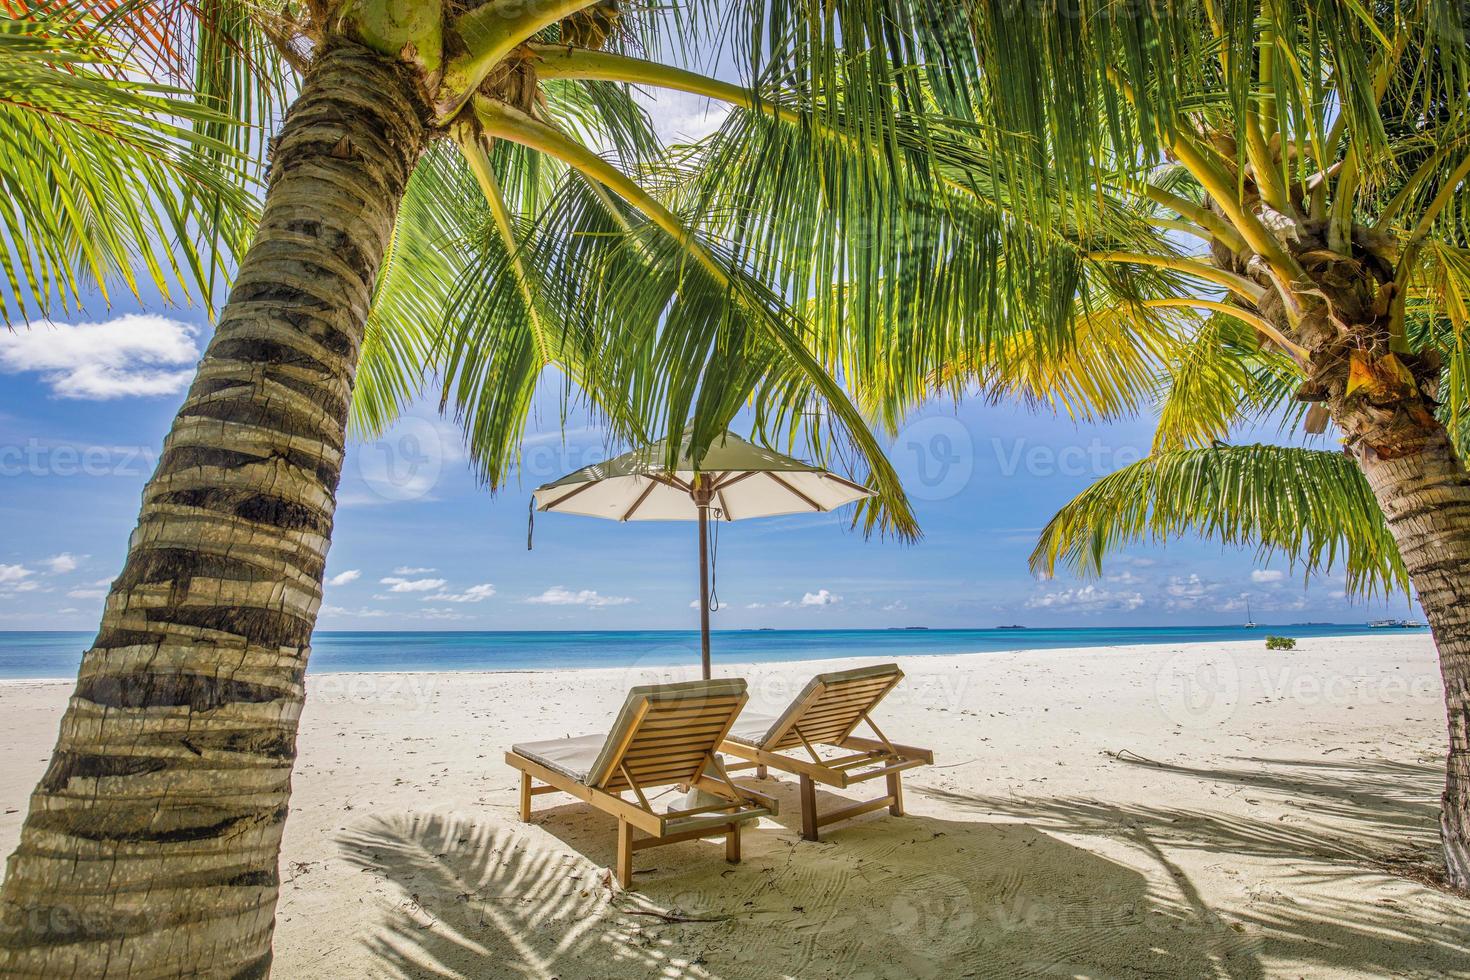 tropische Strandnatur als Sommerlandschaft mit Liegestühlen, Palmenblättern und ruhigem Meer für Strandbanner. luxusreiselandschaft, schönes ziel für urlaub oder urlaub. Strandszene foto